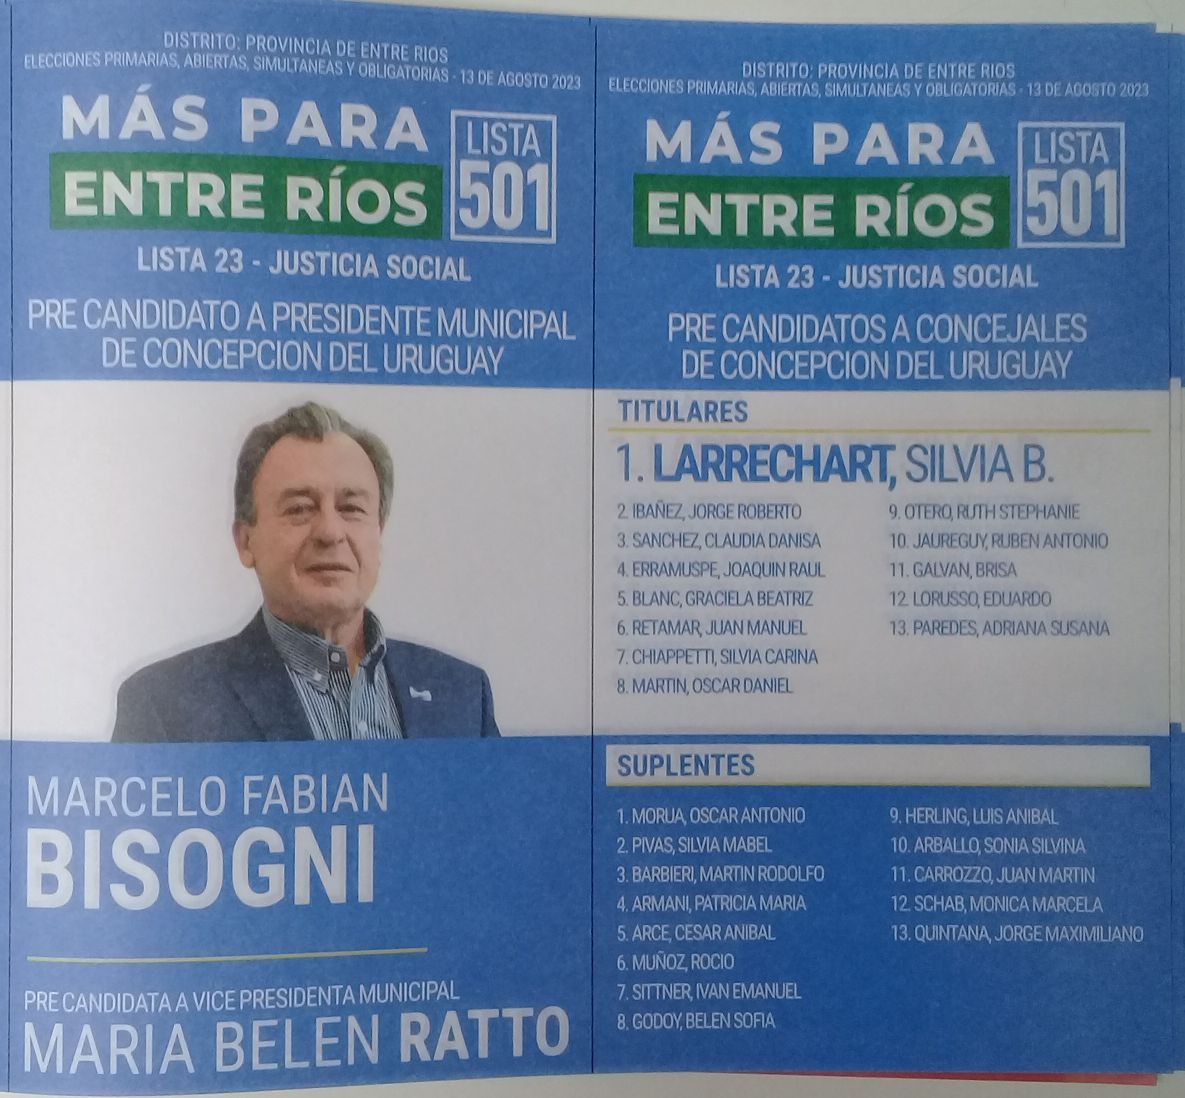 Lista 501: Más Para Entre Ríos - Marcelo Fabián Bisogni.